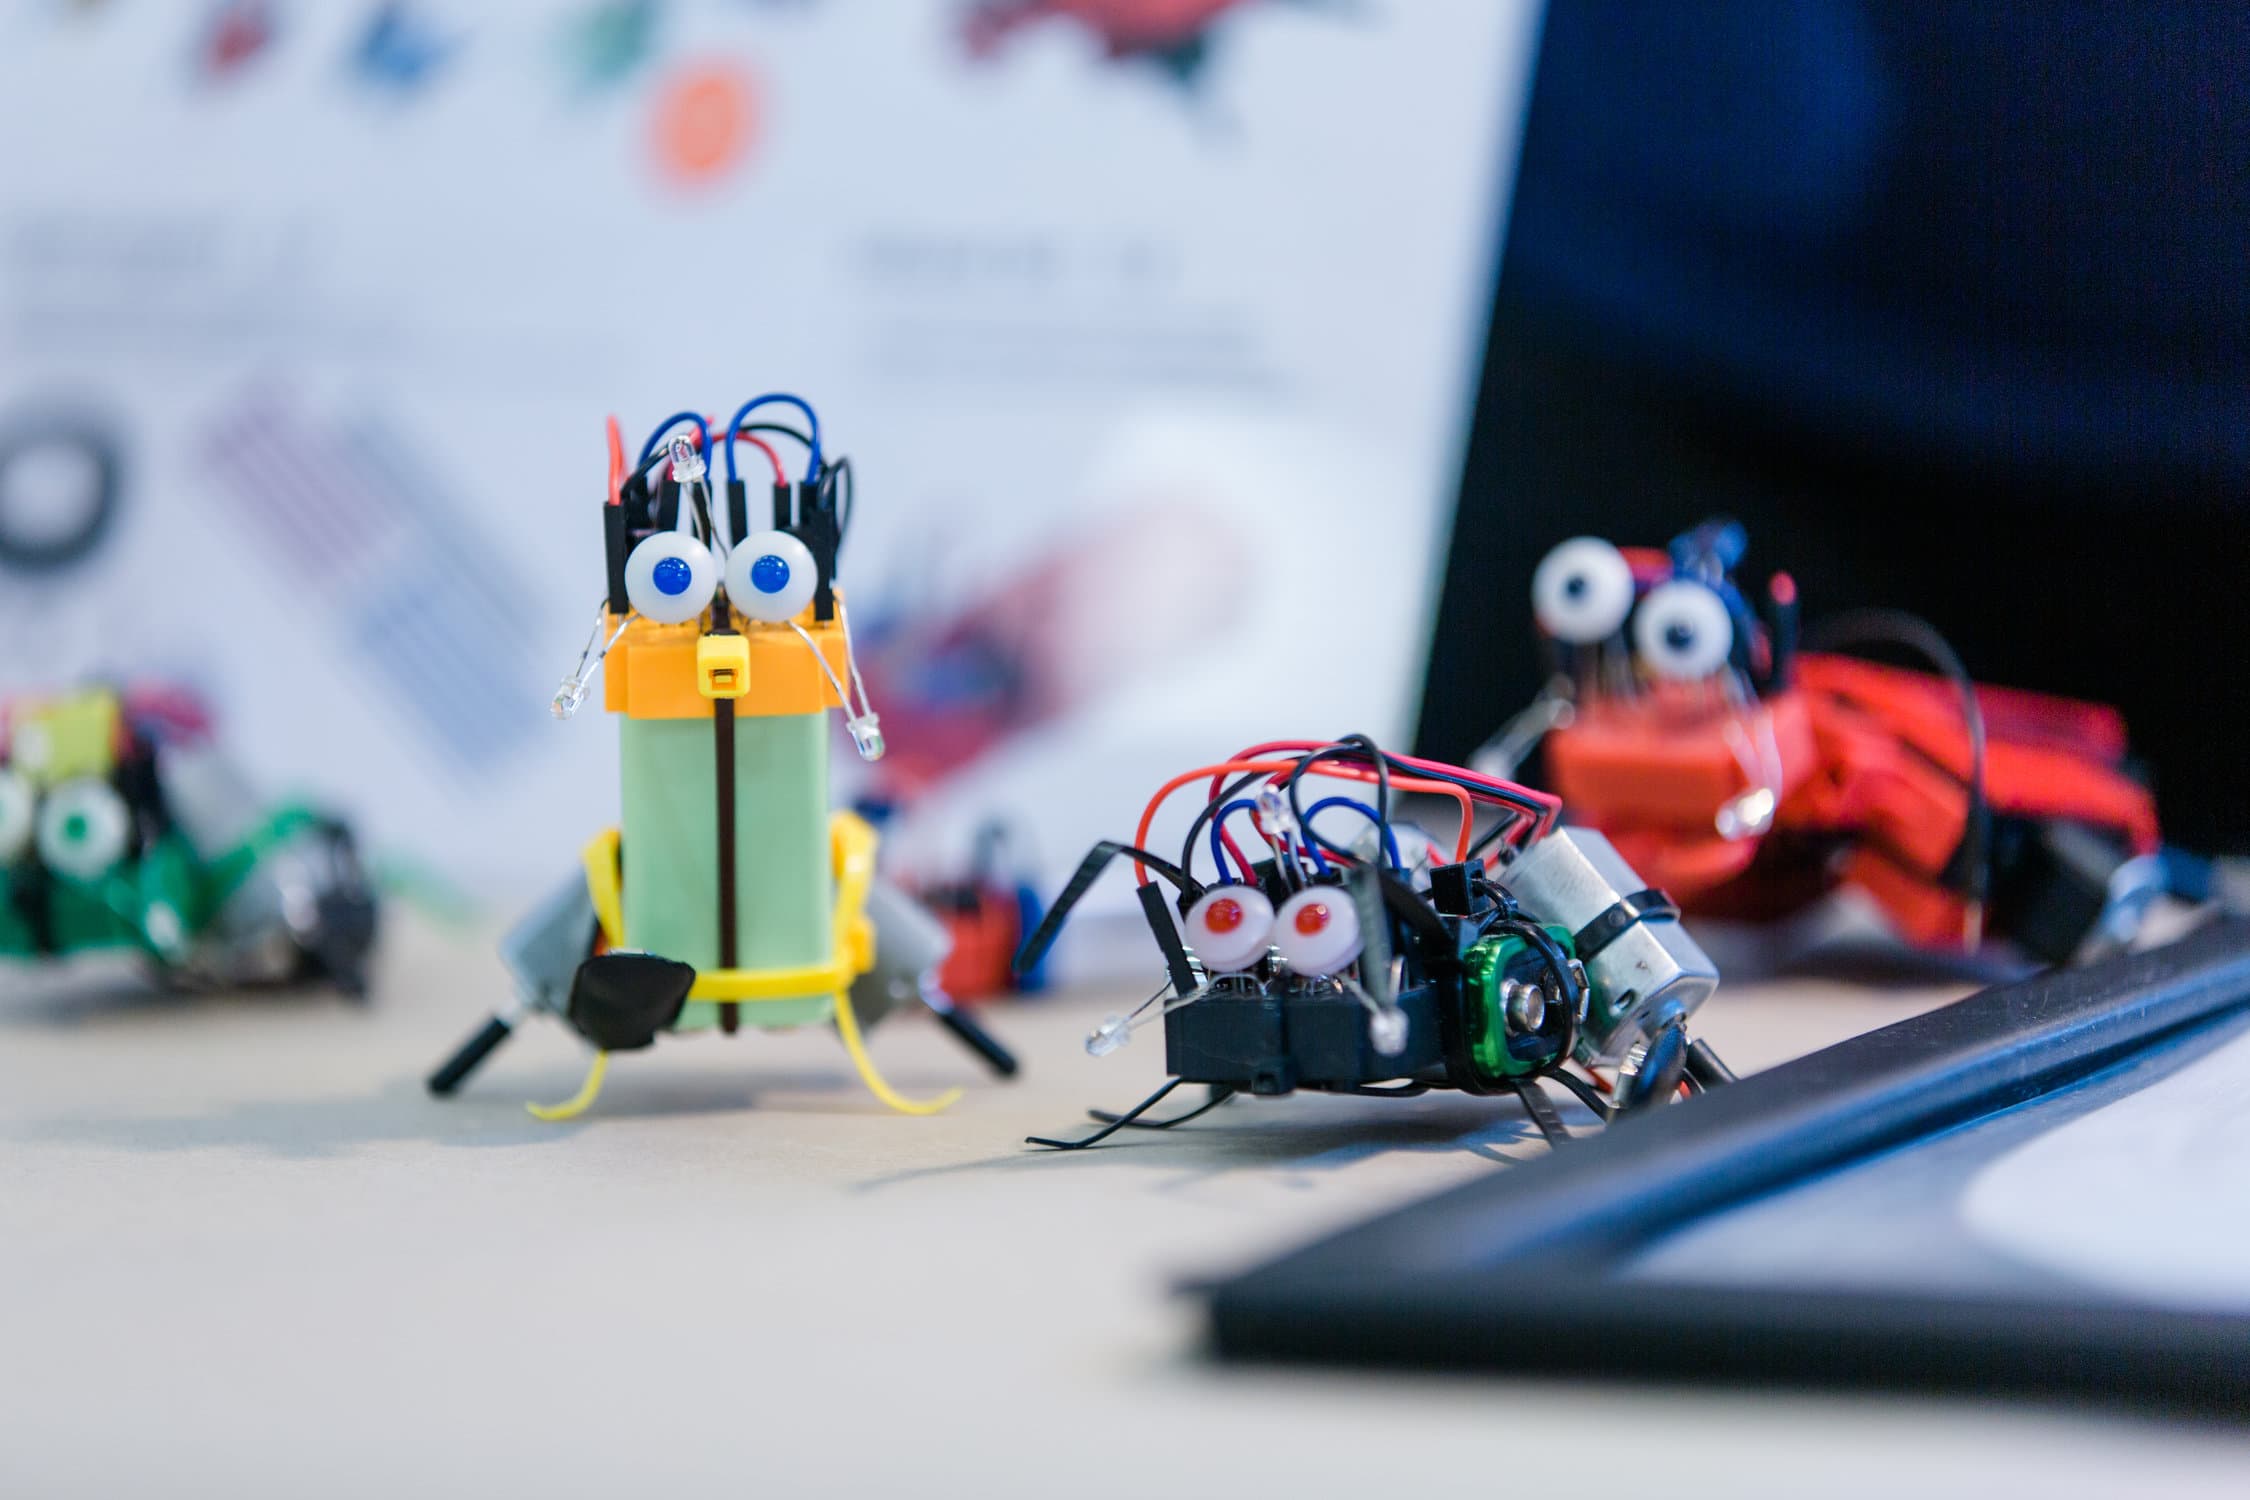 3 kleine bunte Roboter mit aufgeklebten Augen, die auf der Maker Faire Vienna entstanden sind